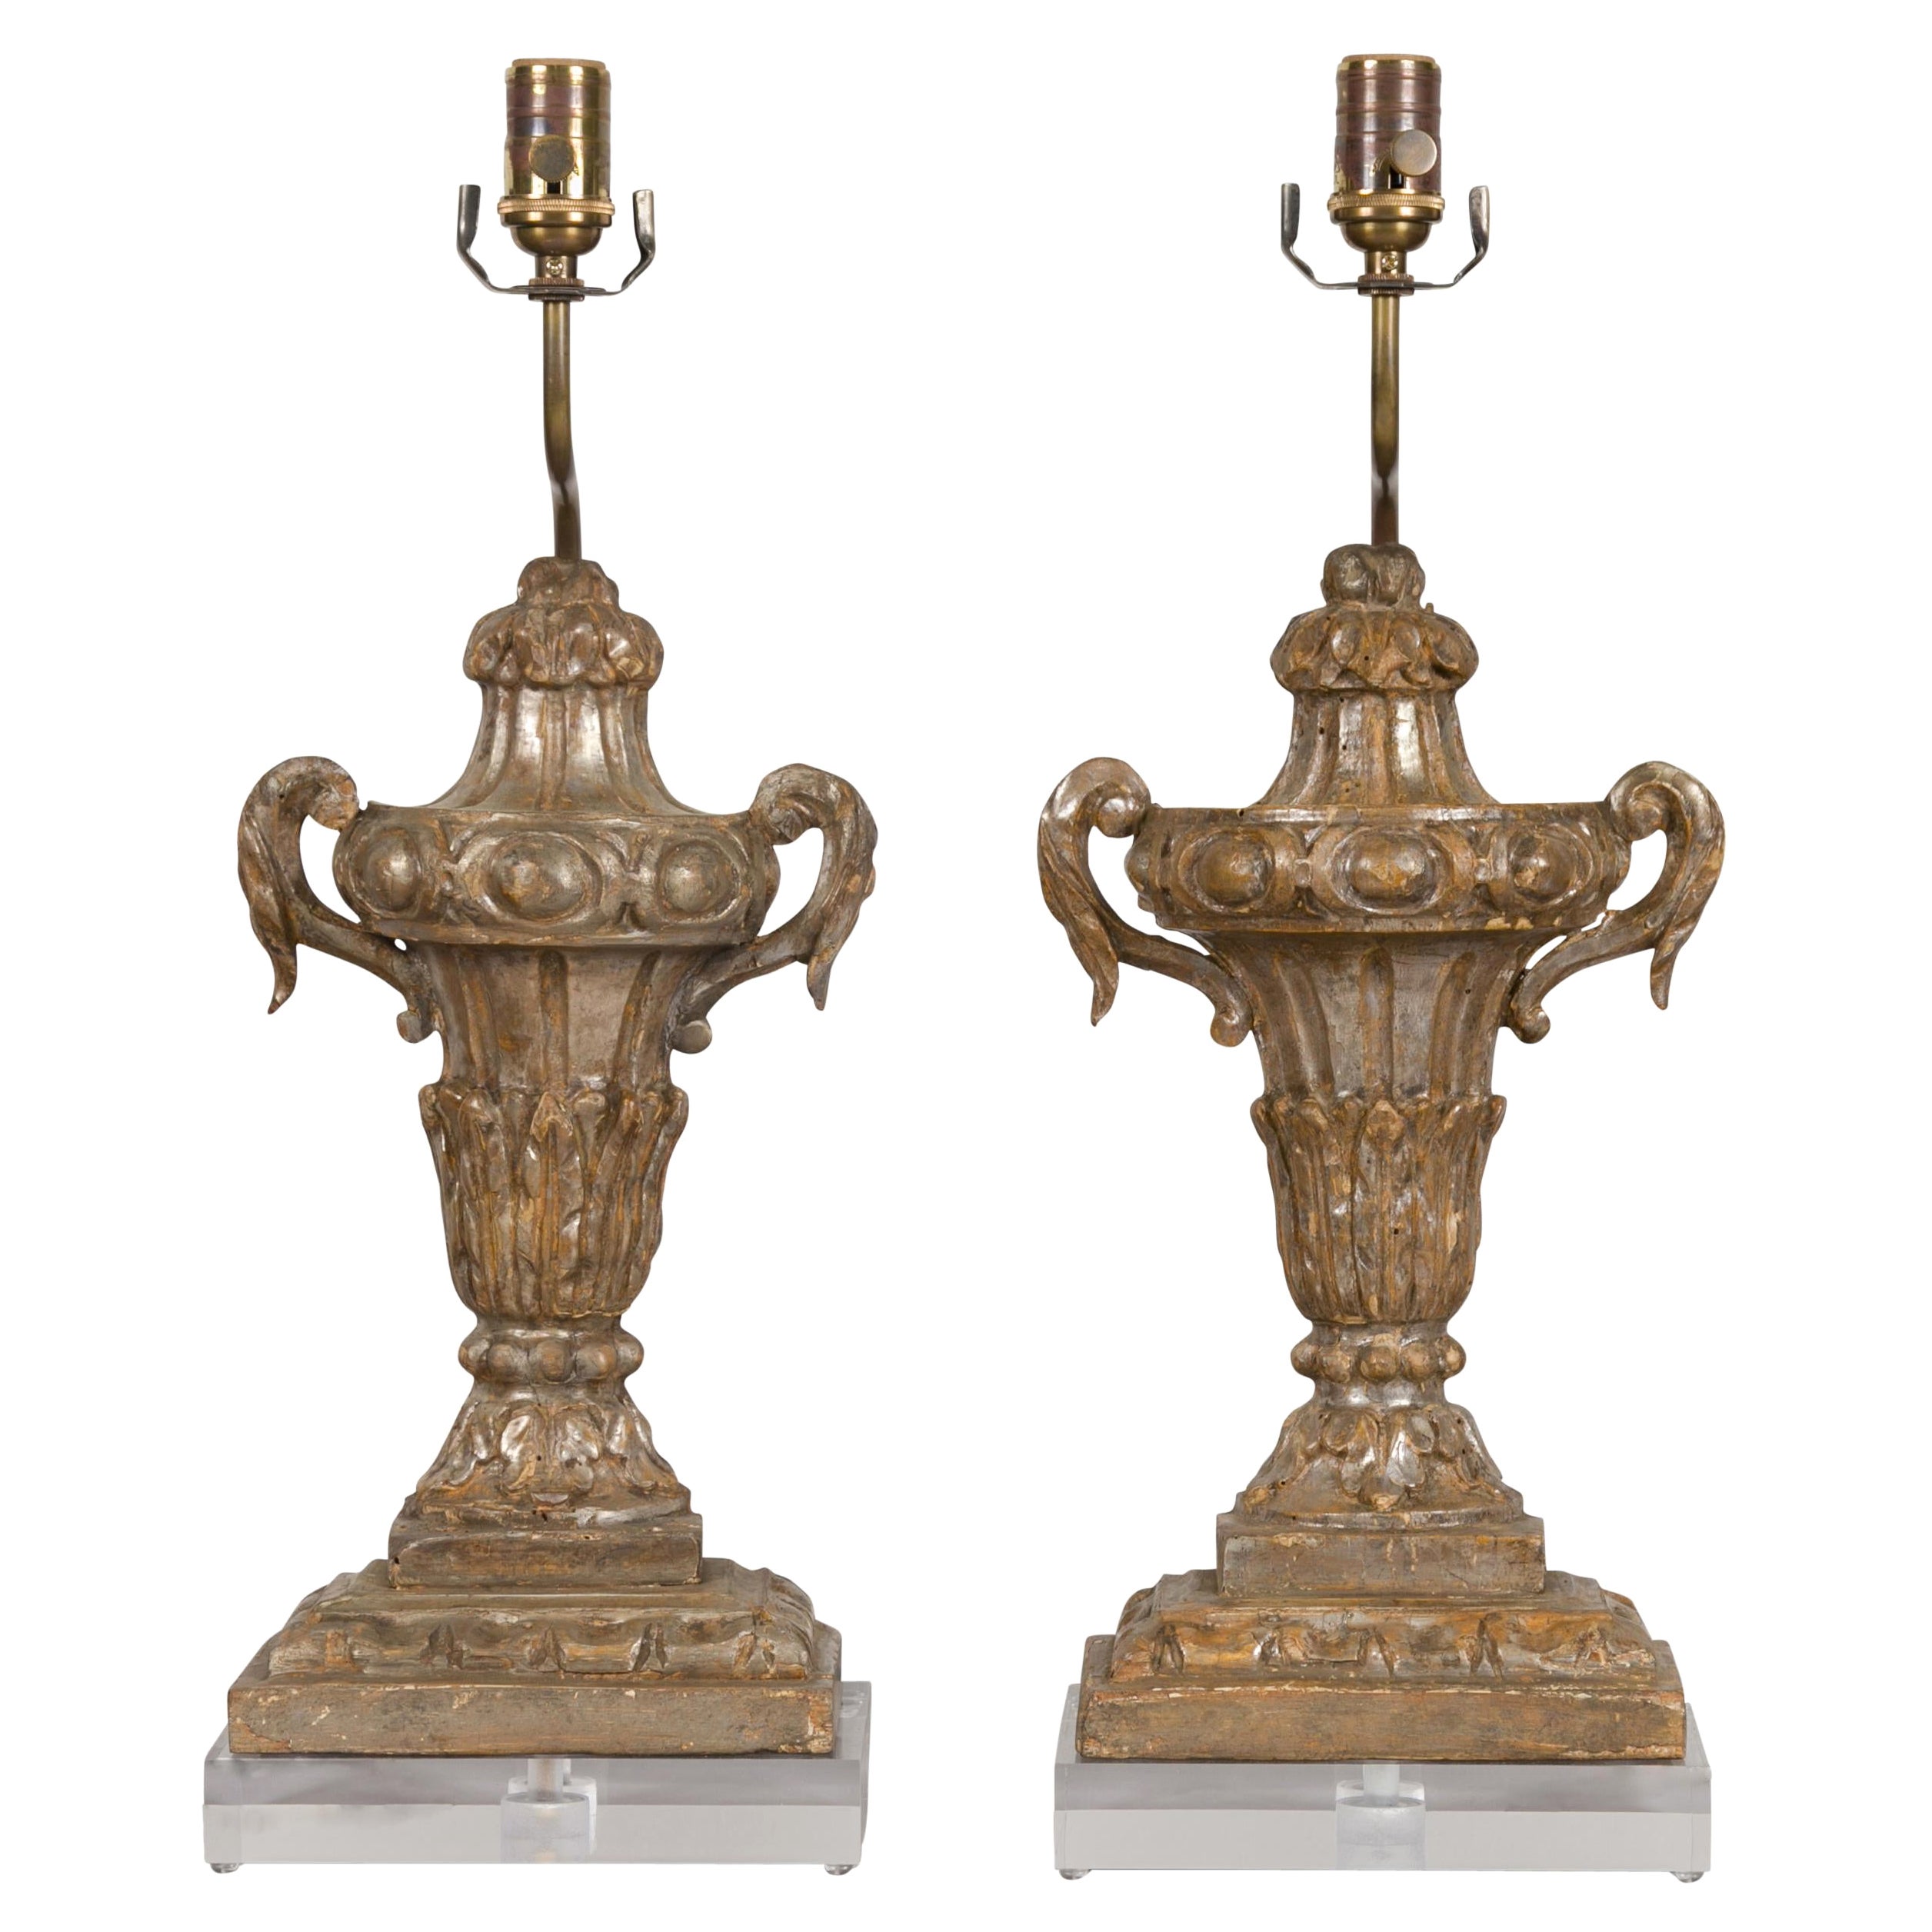 Paar italienische Blattsilberfragmente aus dem 19. Jahrhundert, die zu verdrahteten Tischlampen verarbeitet wurden